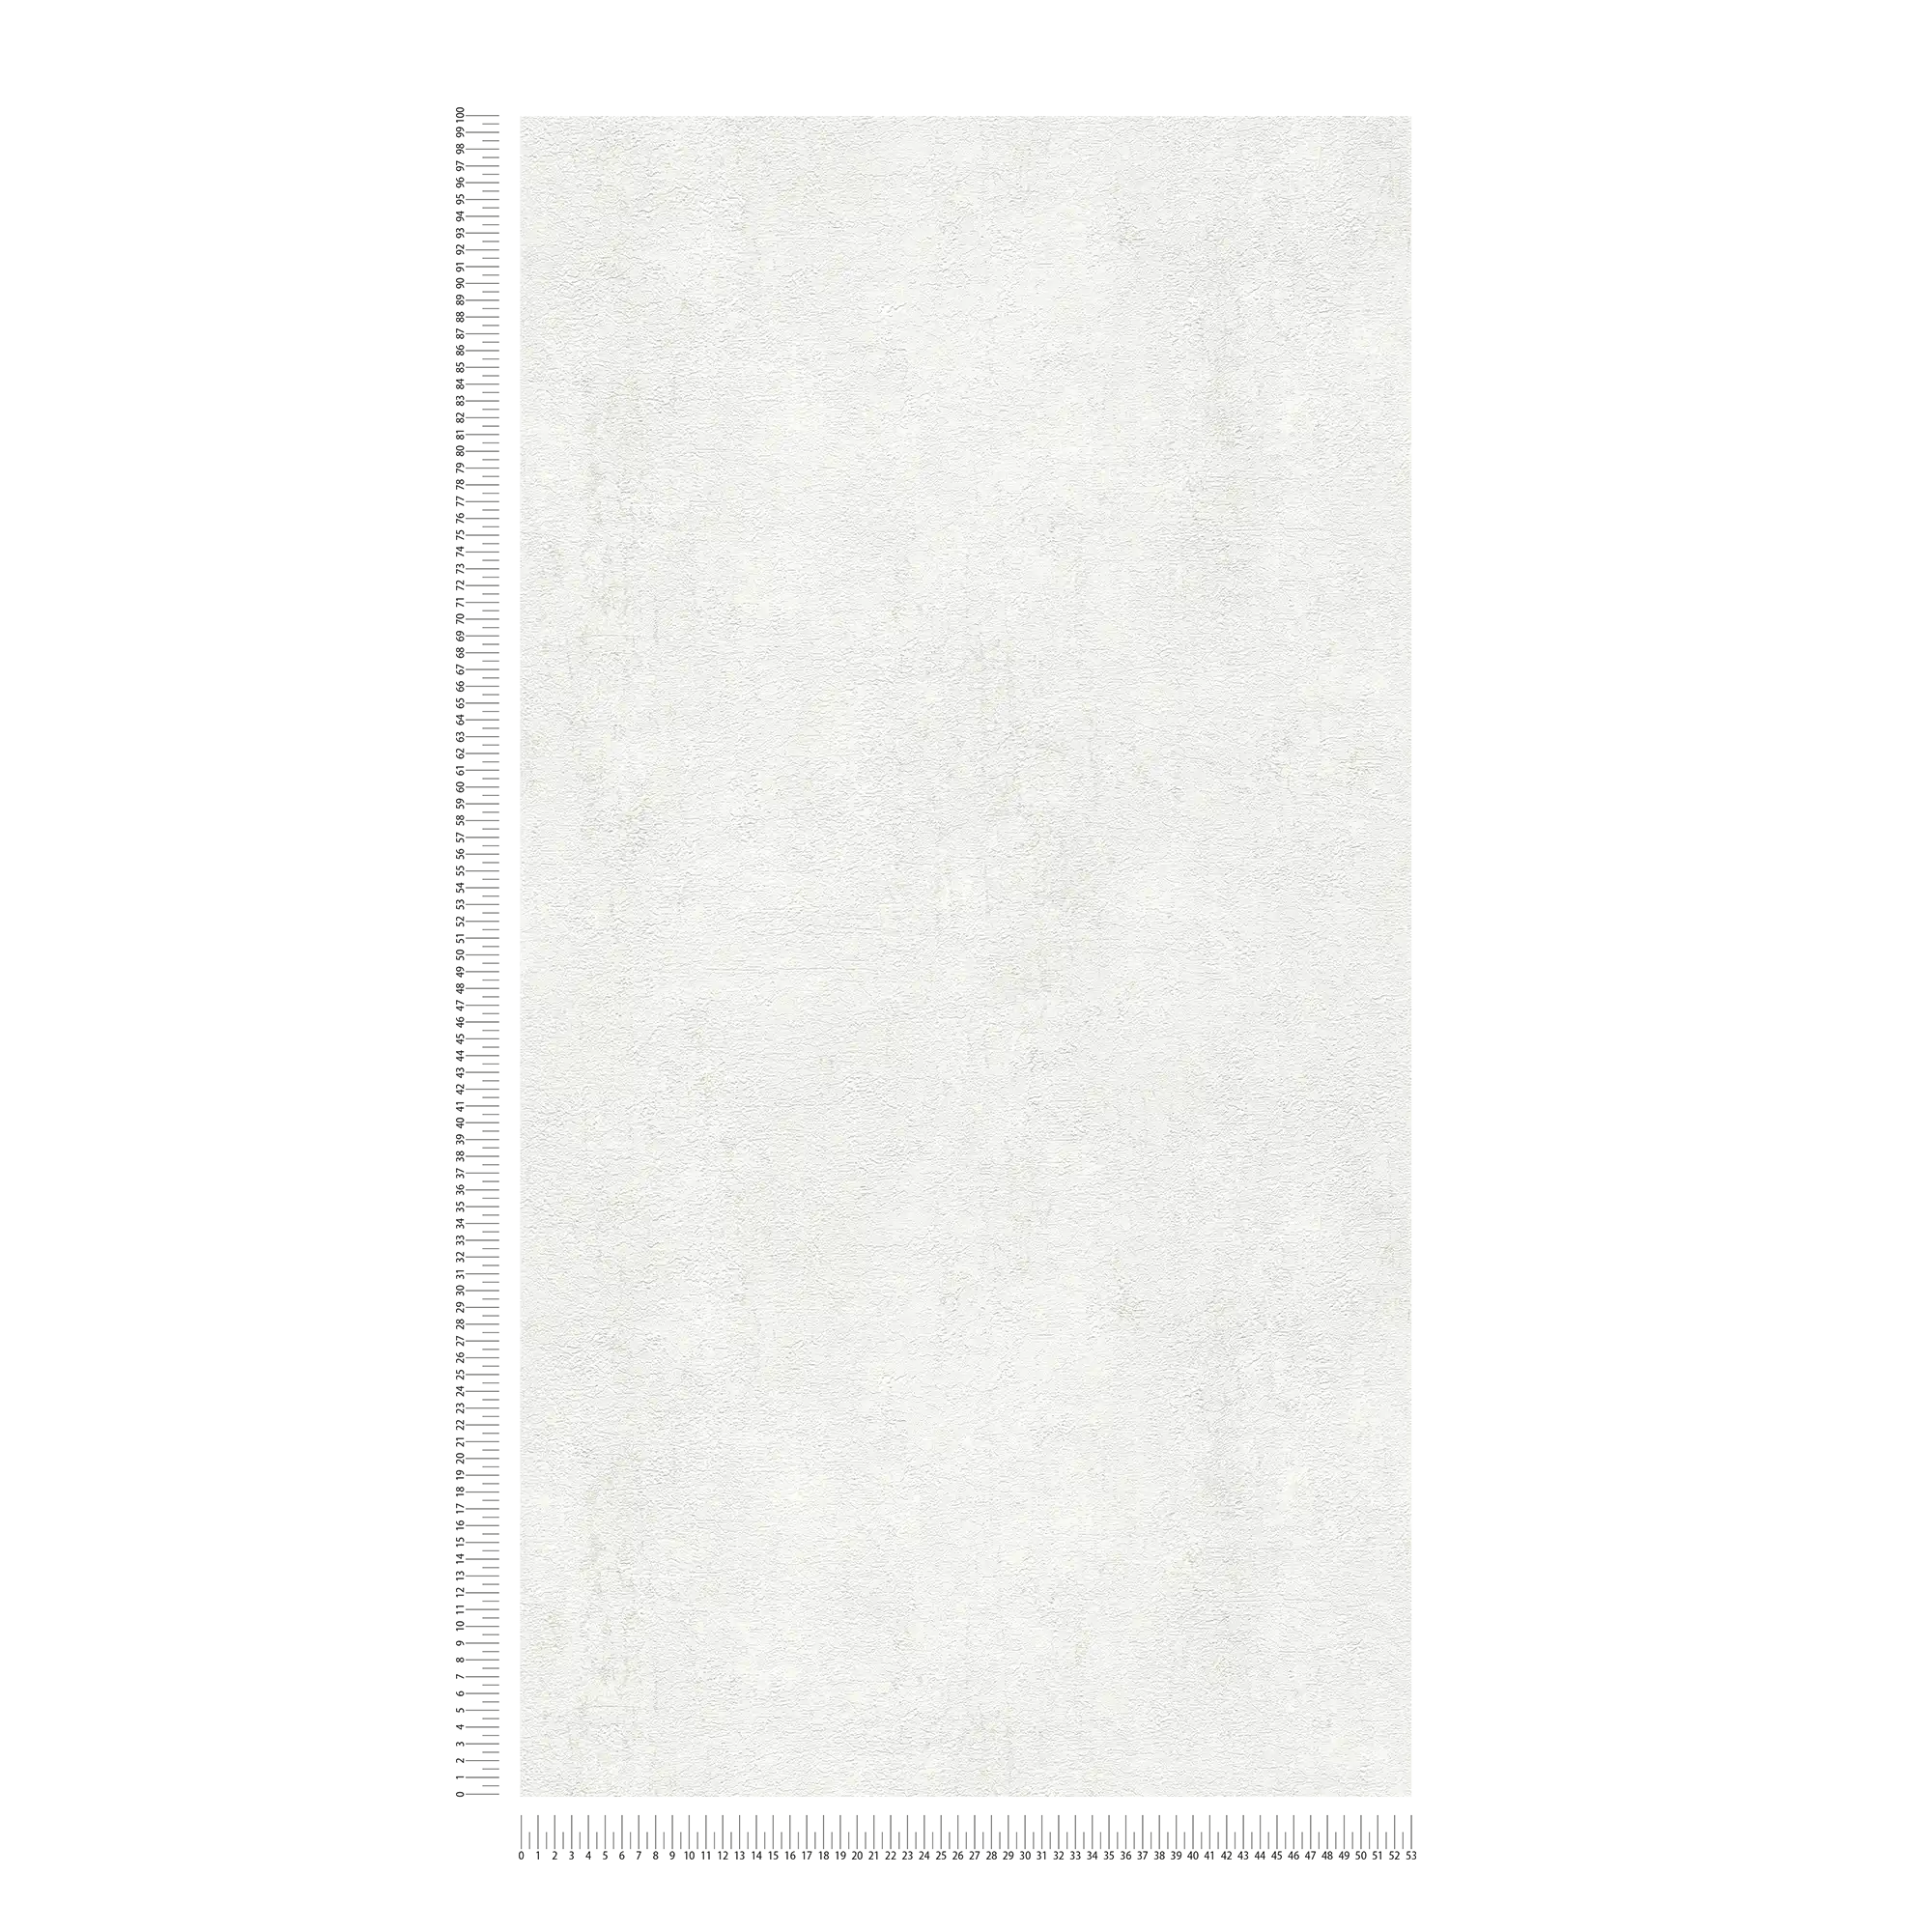             Vliestapete uni mit Matt-Glanz-Effekt – Grau, Weiß
        